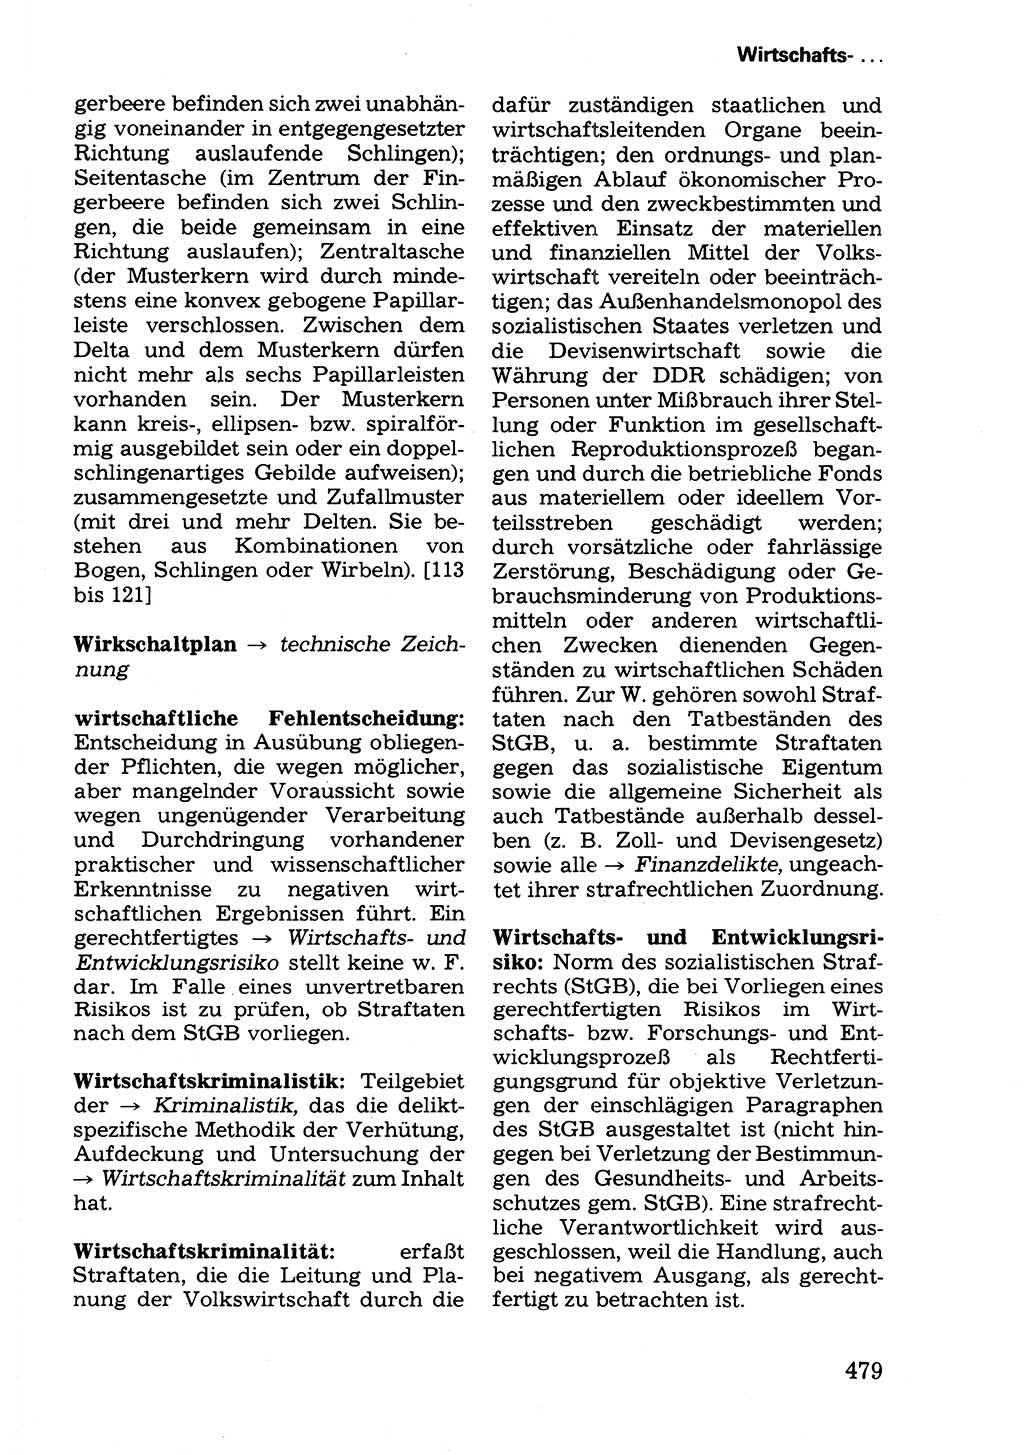 Wörterbuch der sozialistischen Kriminalistik [Deutsche Demokratische Republik (DDR)] 1981, Seite 479 (Wb. soz. Krim. DDR 1981, S. 479)